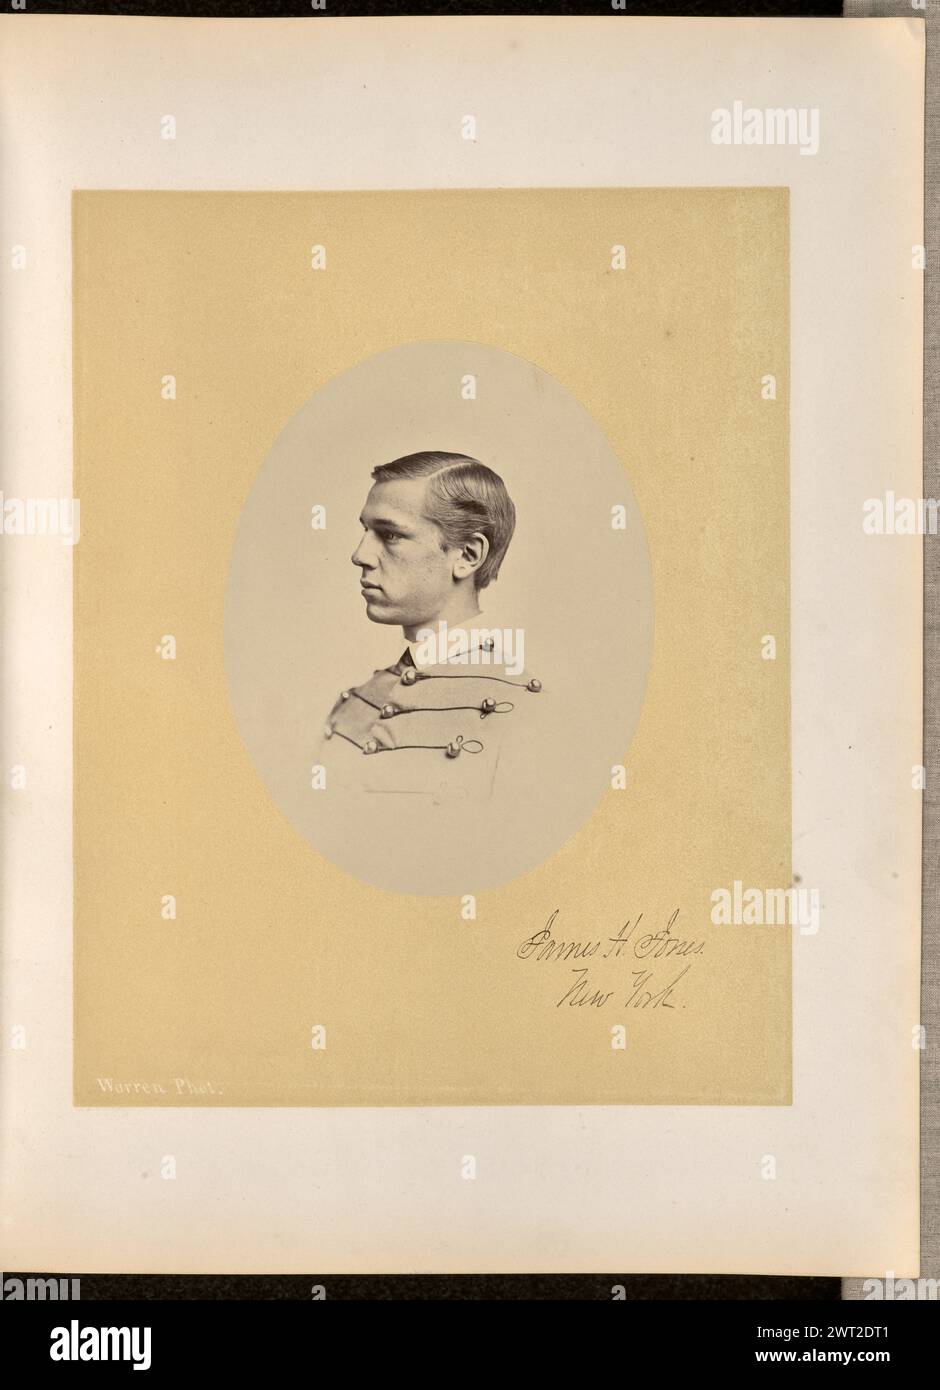 James H. Jones, New York. George Kendall Warren, photographe (américain, 1834 - 1884) 1868 Portrait de profil de James Henry Jones vêtu d'un uniforme de cadet. Il fait face à la zone gauche de l'image. (Recto, monture) en bas à droite, à l'encre noire, dans la main du sitter : 'James H. Jones. / New York.» Banque D'Images